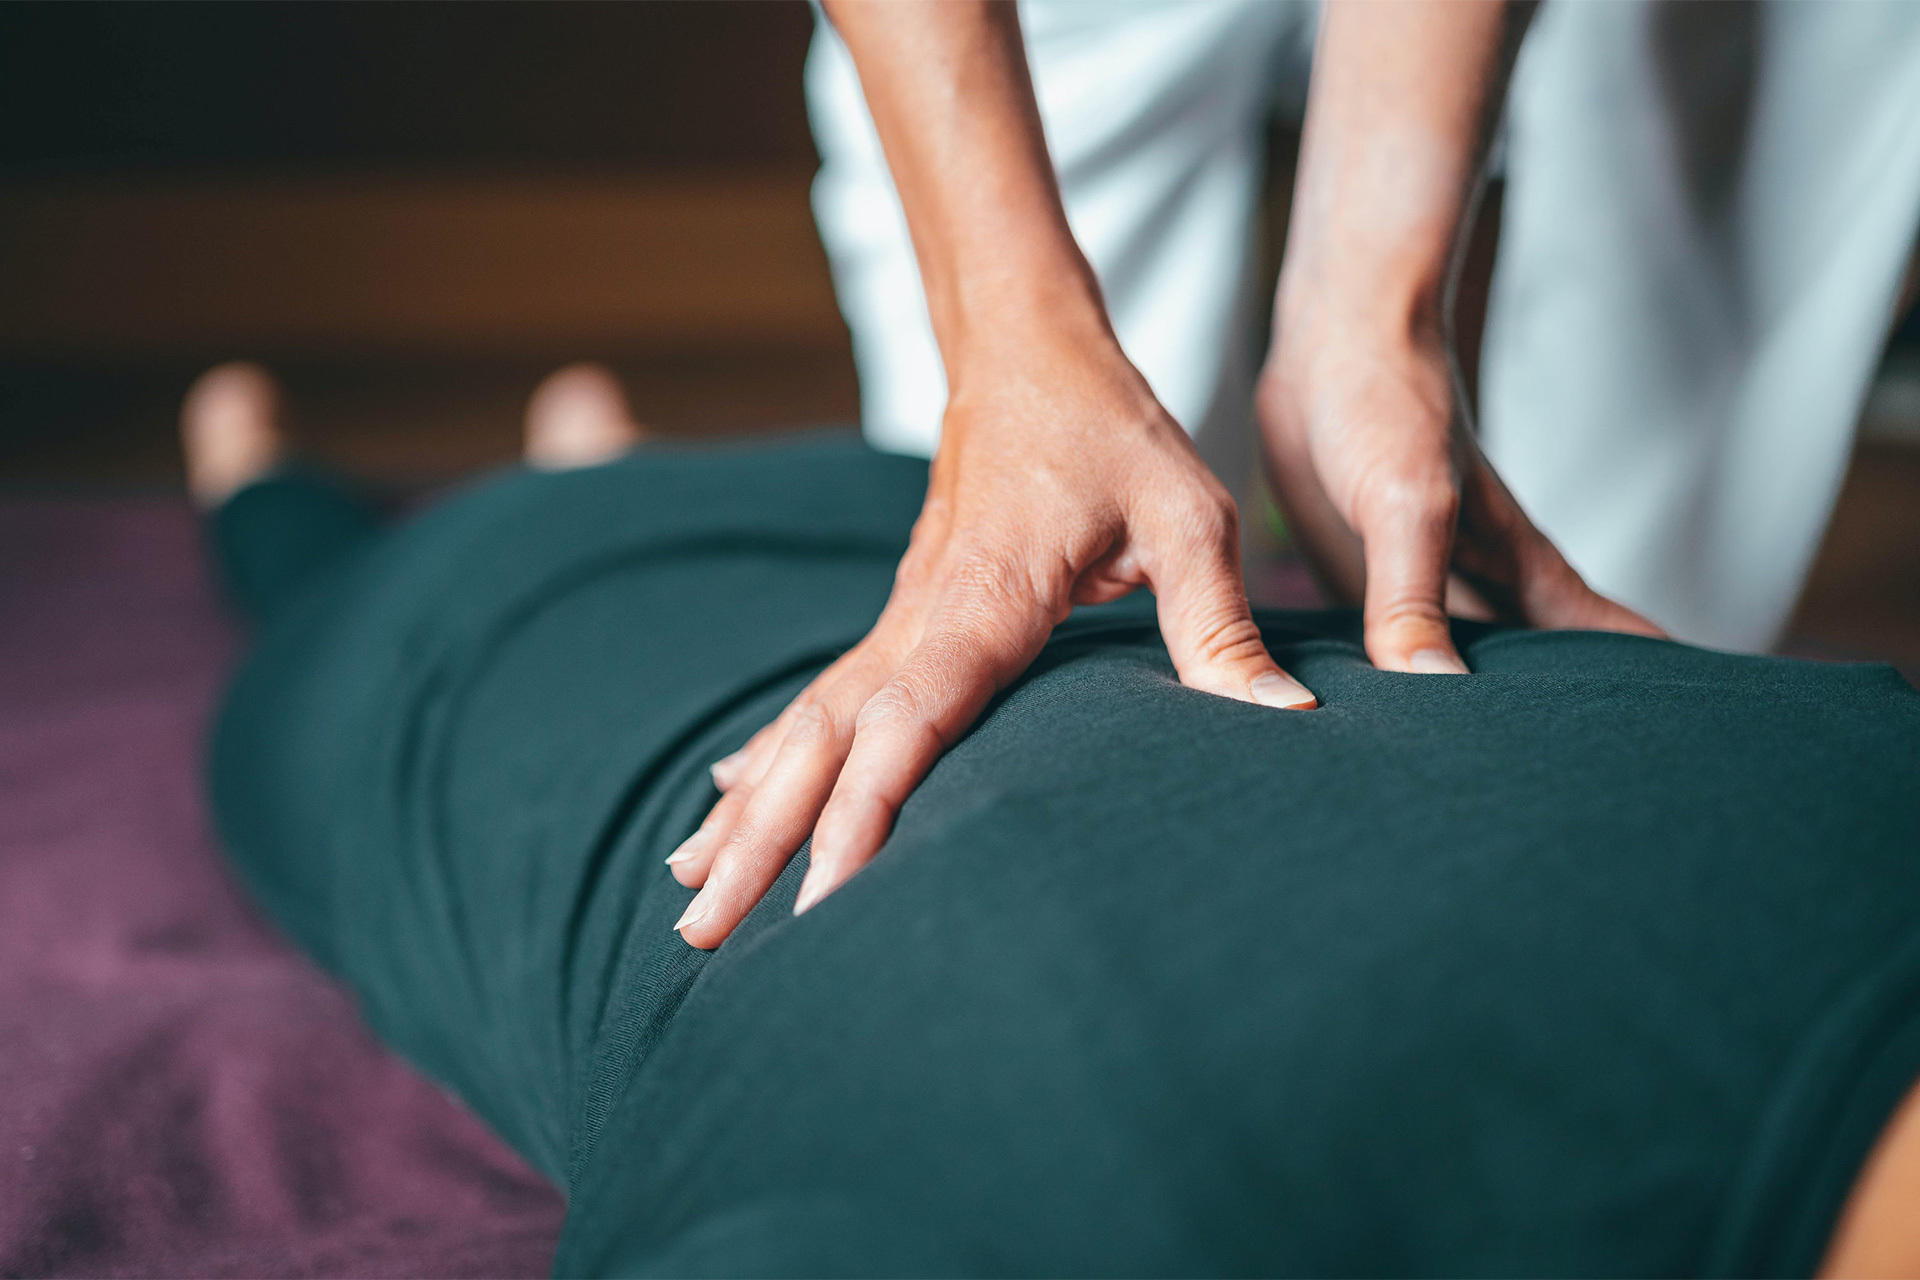 Customer receiving a back massage